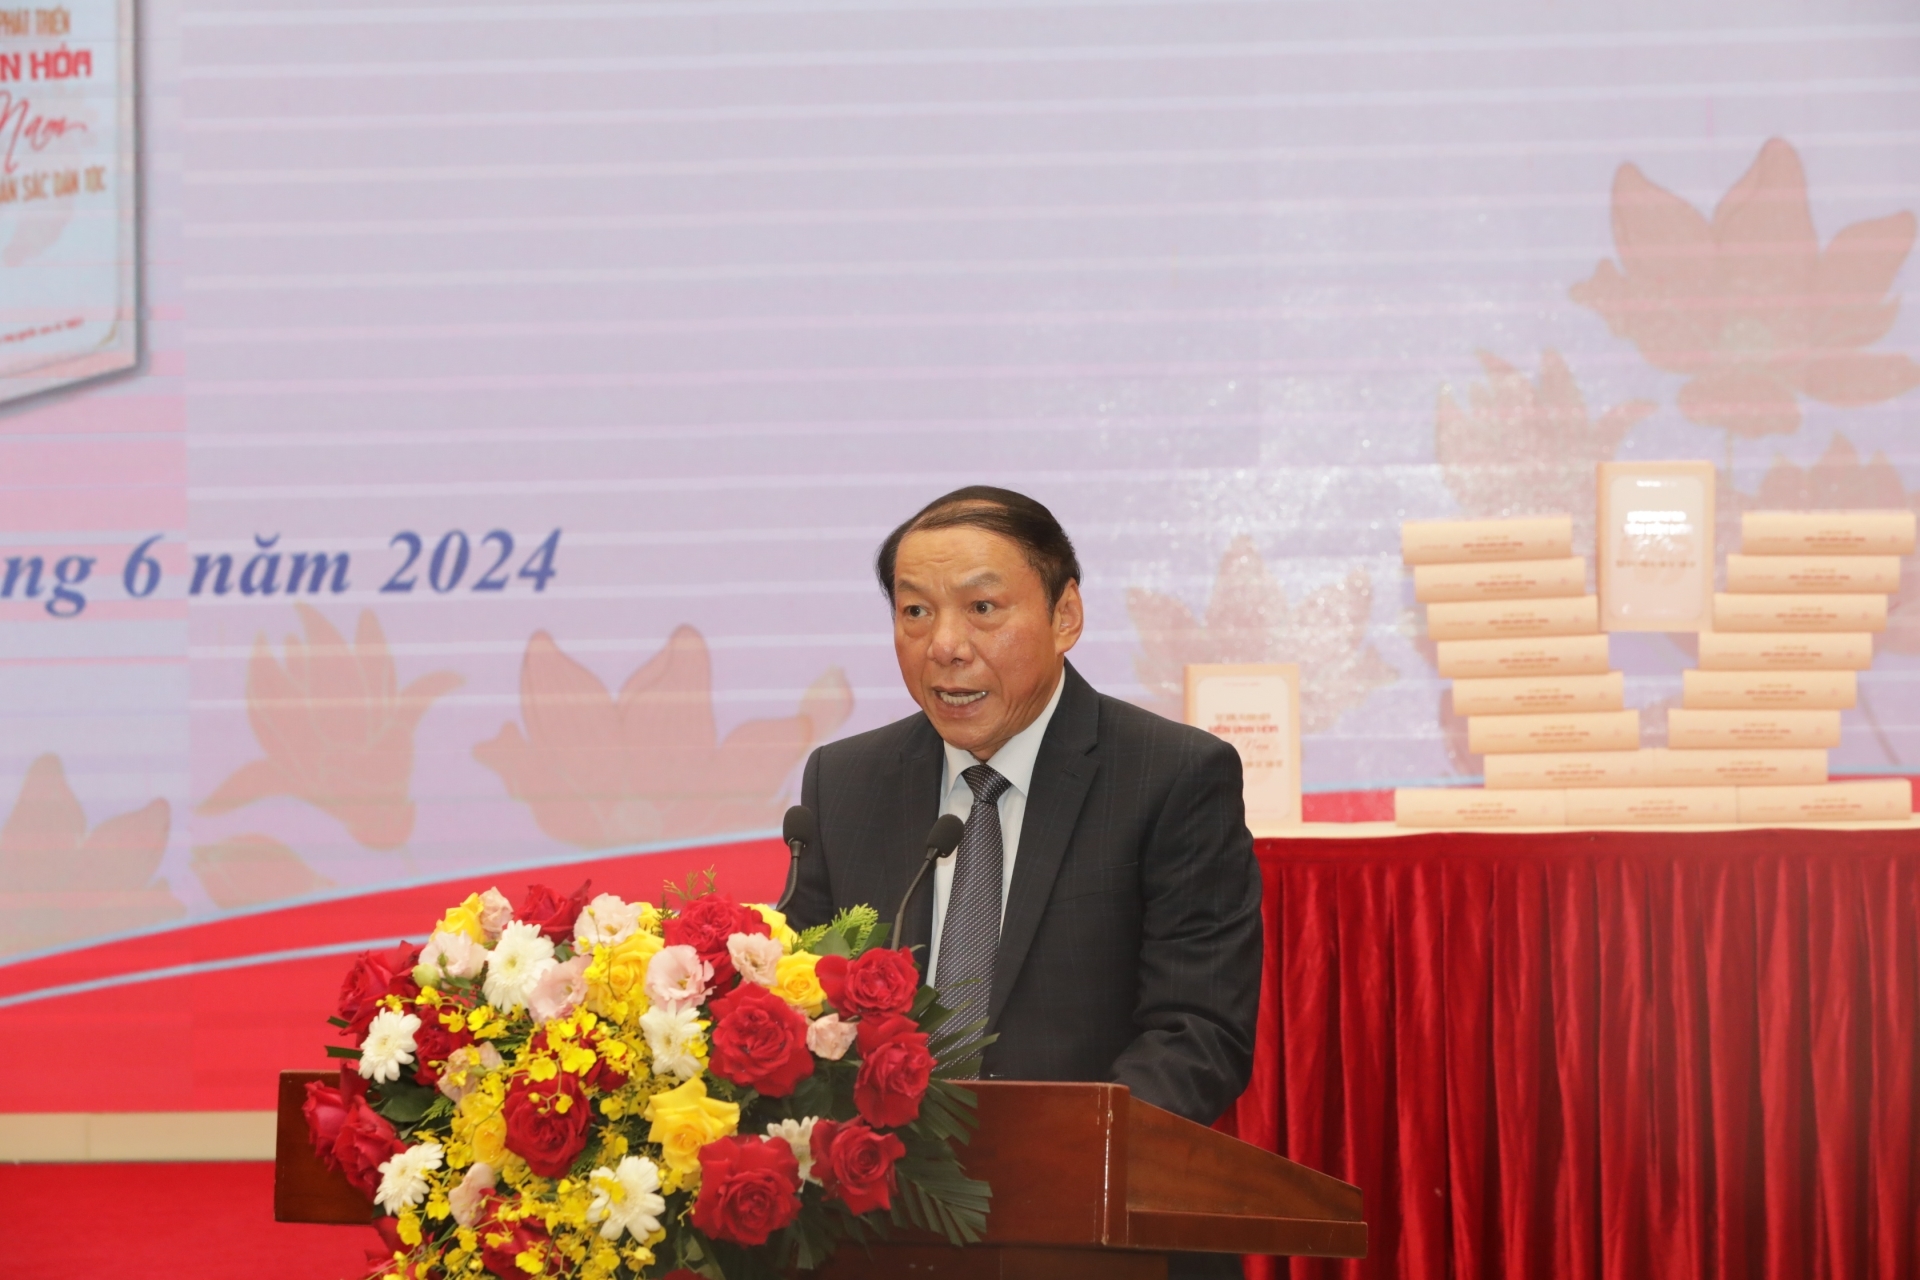 Đồng chí Nguyễn Văn Hùng, Ủy viên Trung ương Đảng, Bộ trưởng Bộ Văn hóa, Thể thao và Du lịch phát biểu tại buổi lễ.